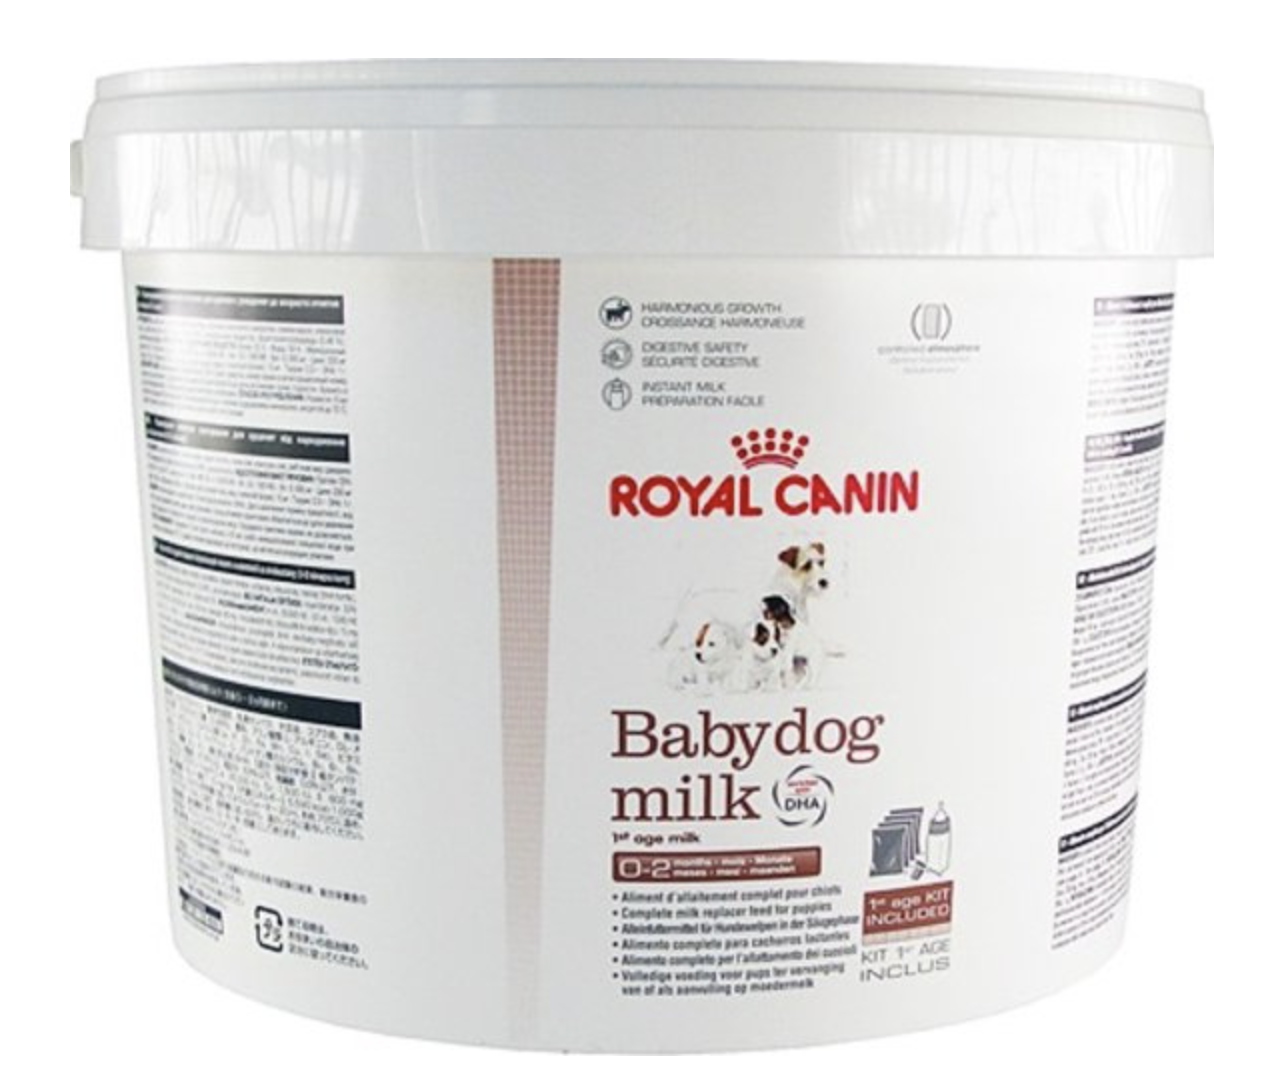 Royal Canin mléko krmné Babydog Milk pes 2kg + láhev a 3 velikostní dudlíky